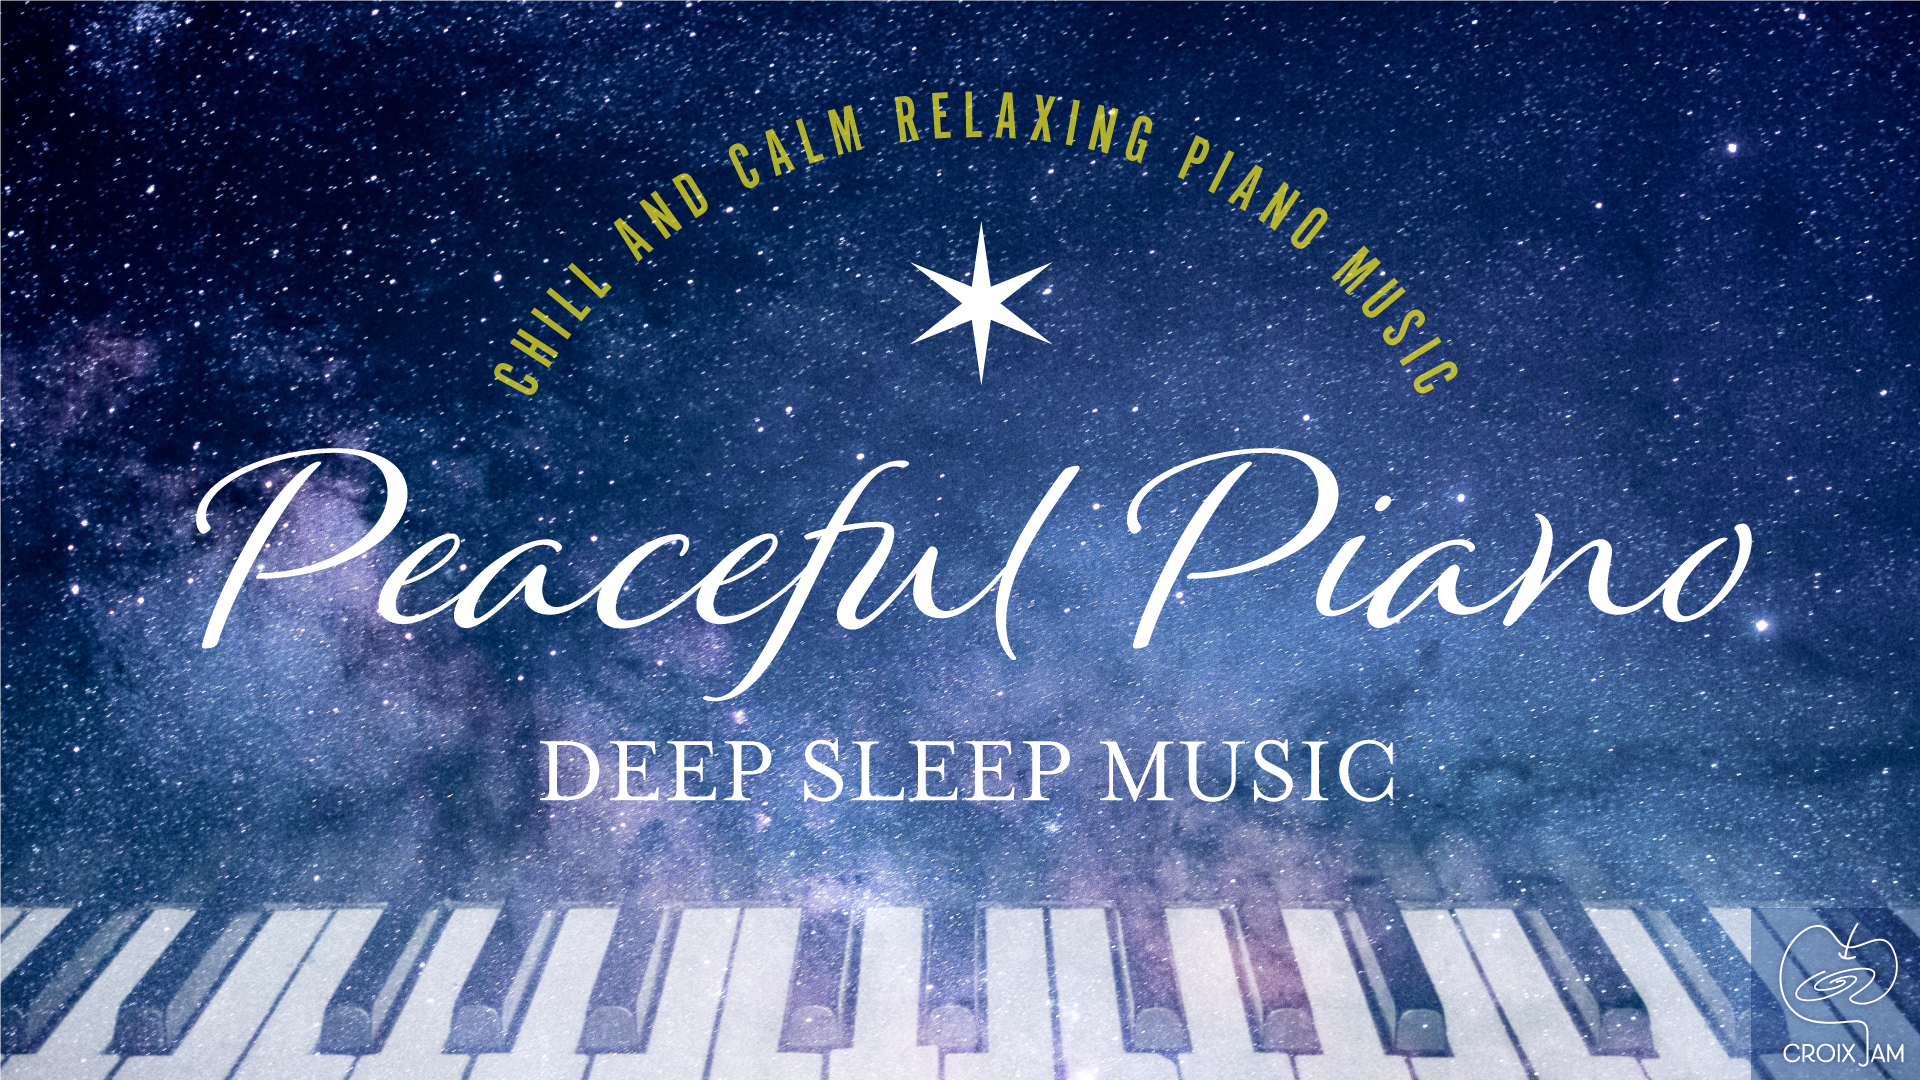 穏やかなピアノ音楽で一日の疲れを癒す 12星座をモチーフにした Peaceful Piano ぐっすり眠れるピアノ シリーズ第二弾は Pisces うお座 株式会社クロアのプレスリリース